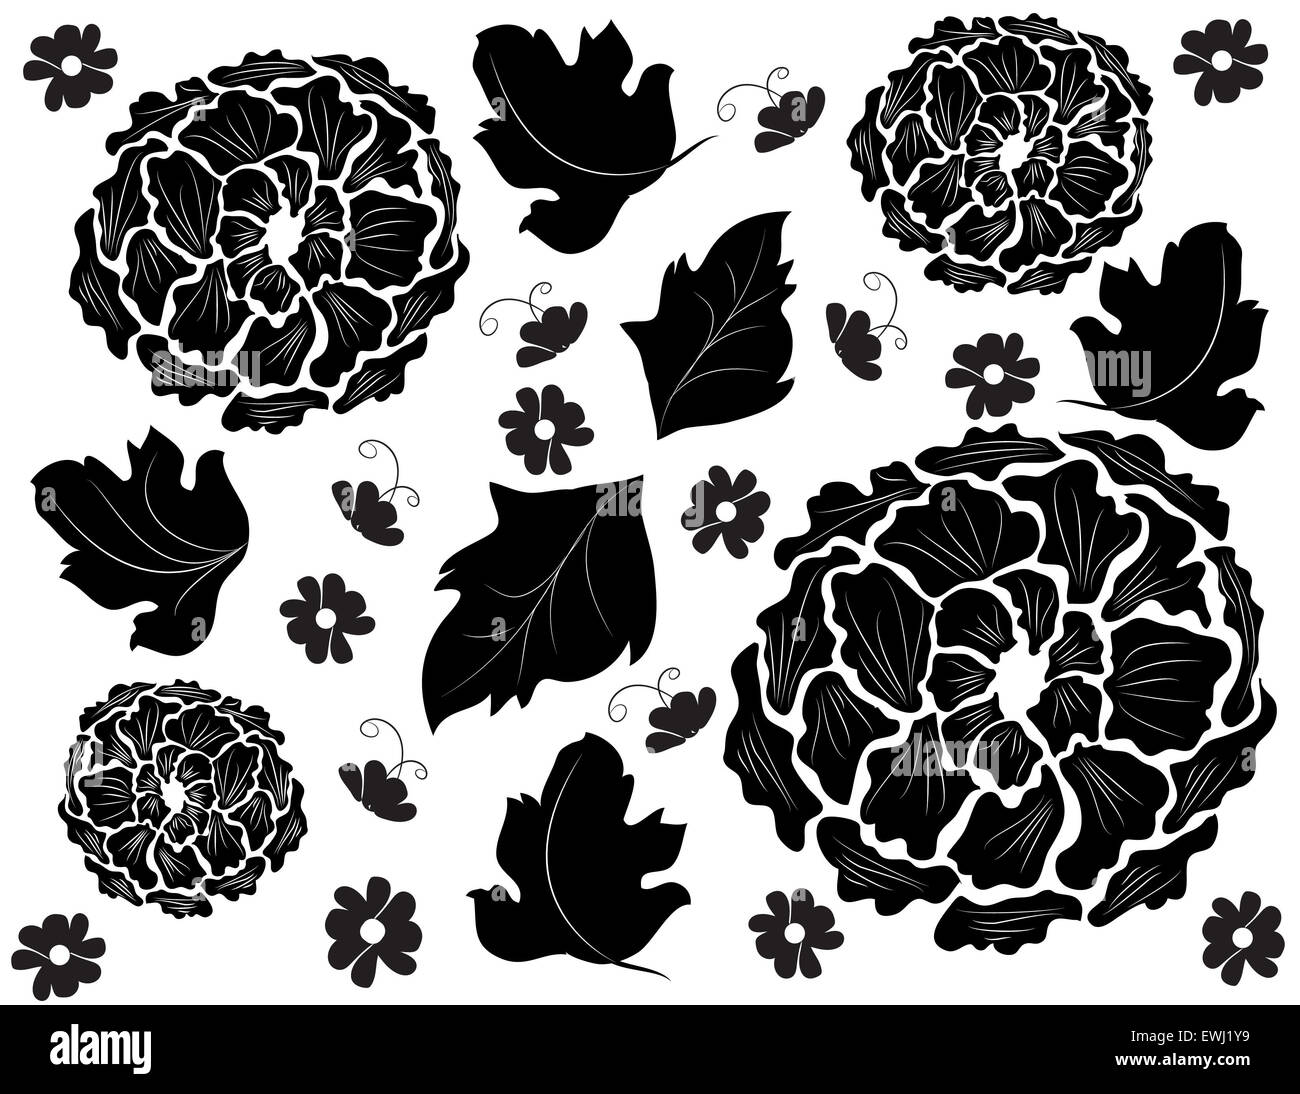 Composition florale originale en noir et blanc pour décorer tous vos espaces avec des chrysanthèmes Banque D'Images